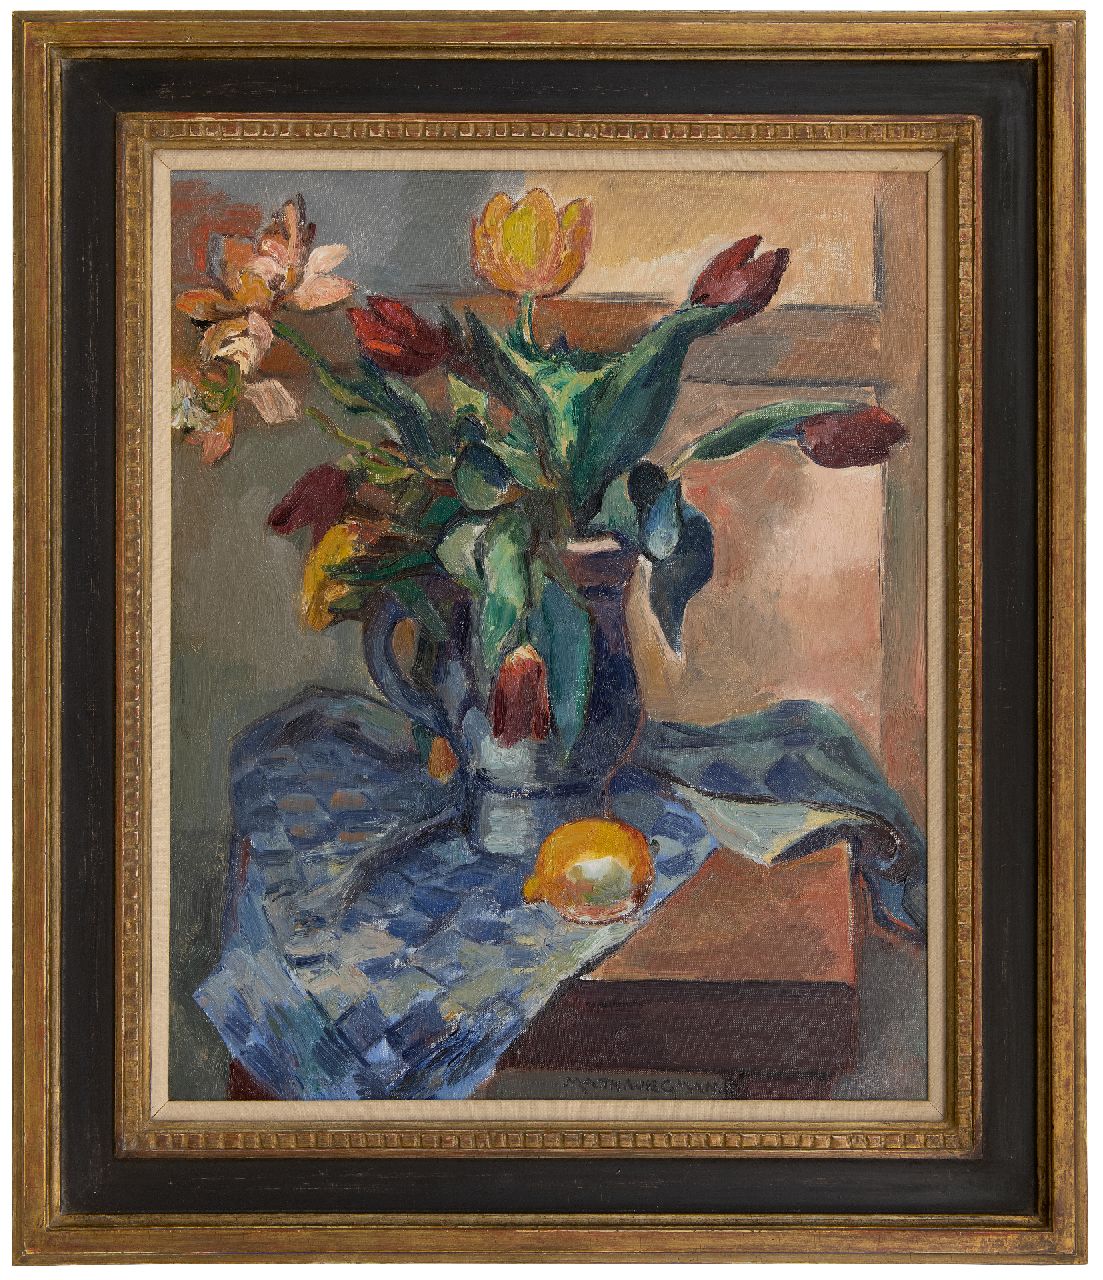 Wiegman M.J.M.  | Mattheus Johannes Marie 'Matthieu' Wiegman | Schilderijen te koop aangeboden | Stilleven met tulpen en een citroen, olieverf op doek 61,4 x 50,1 cm, gesigneerd middenonder